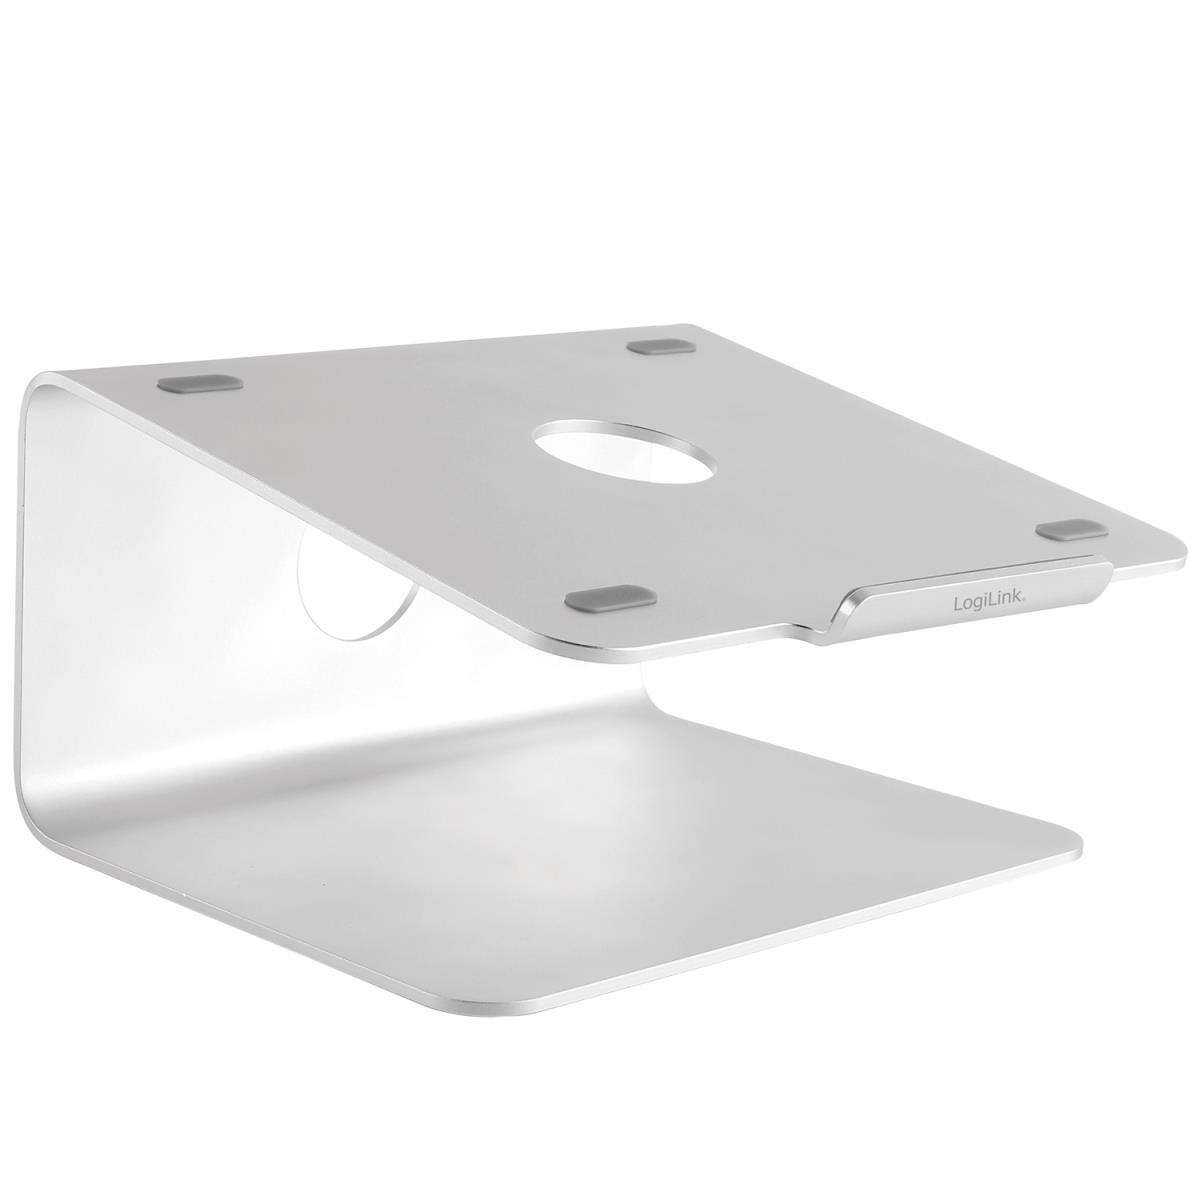 LogiLink: Ställ för laptop 11-17" / surfplatta